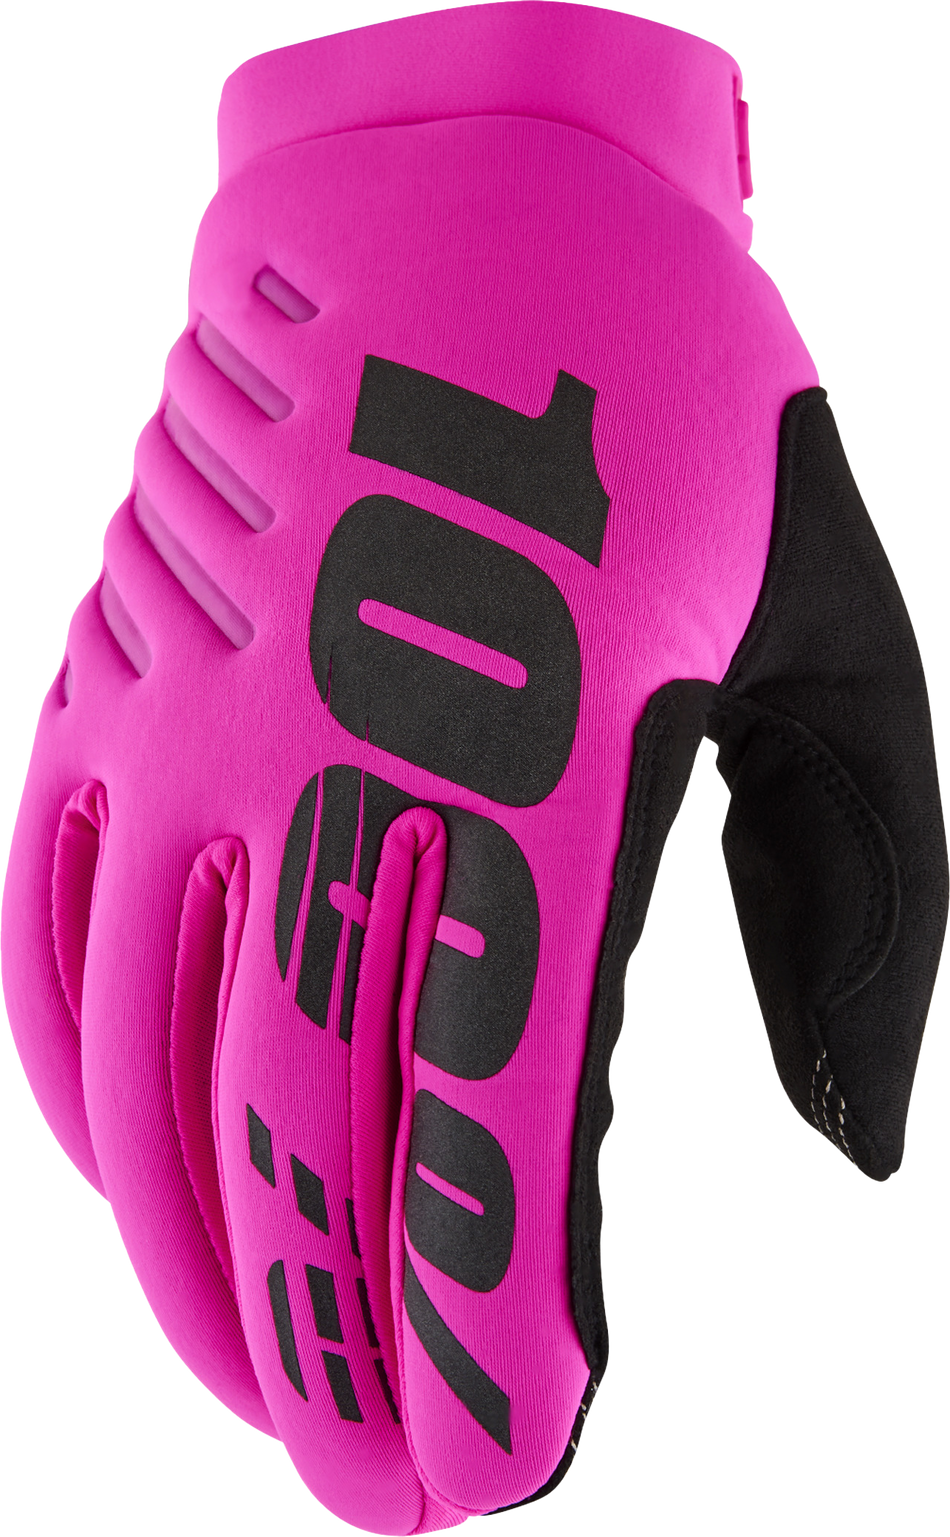 100% Brisker Women's Gloves Neon Pink/Black Sm 10005-00006